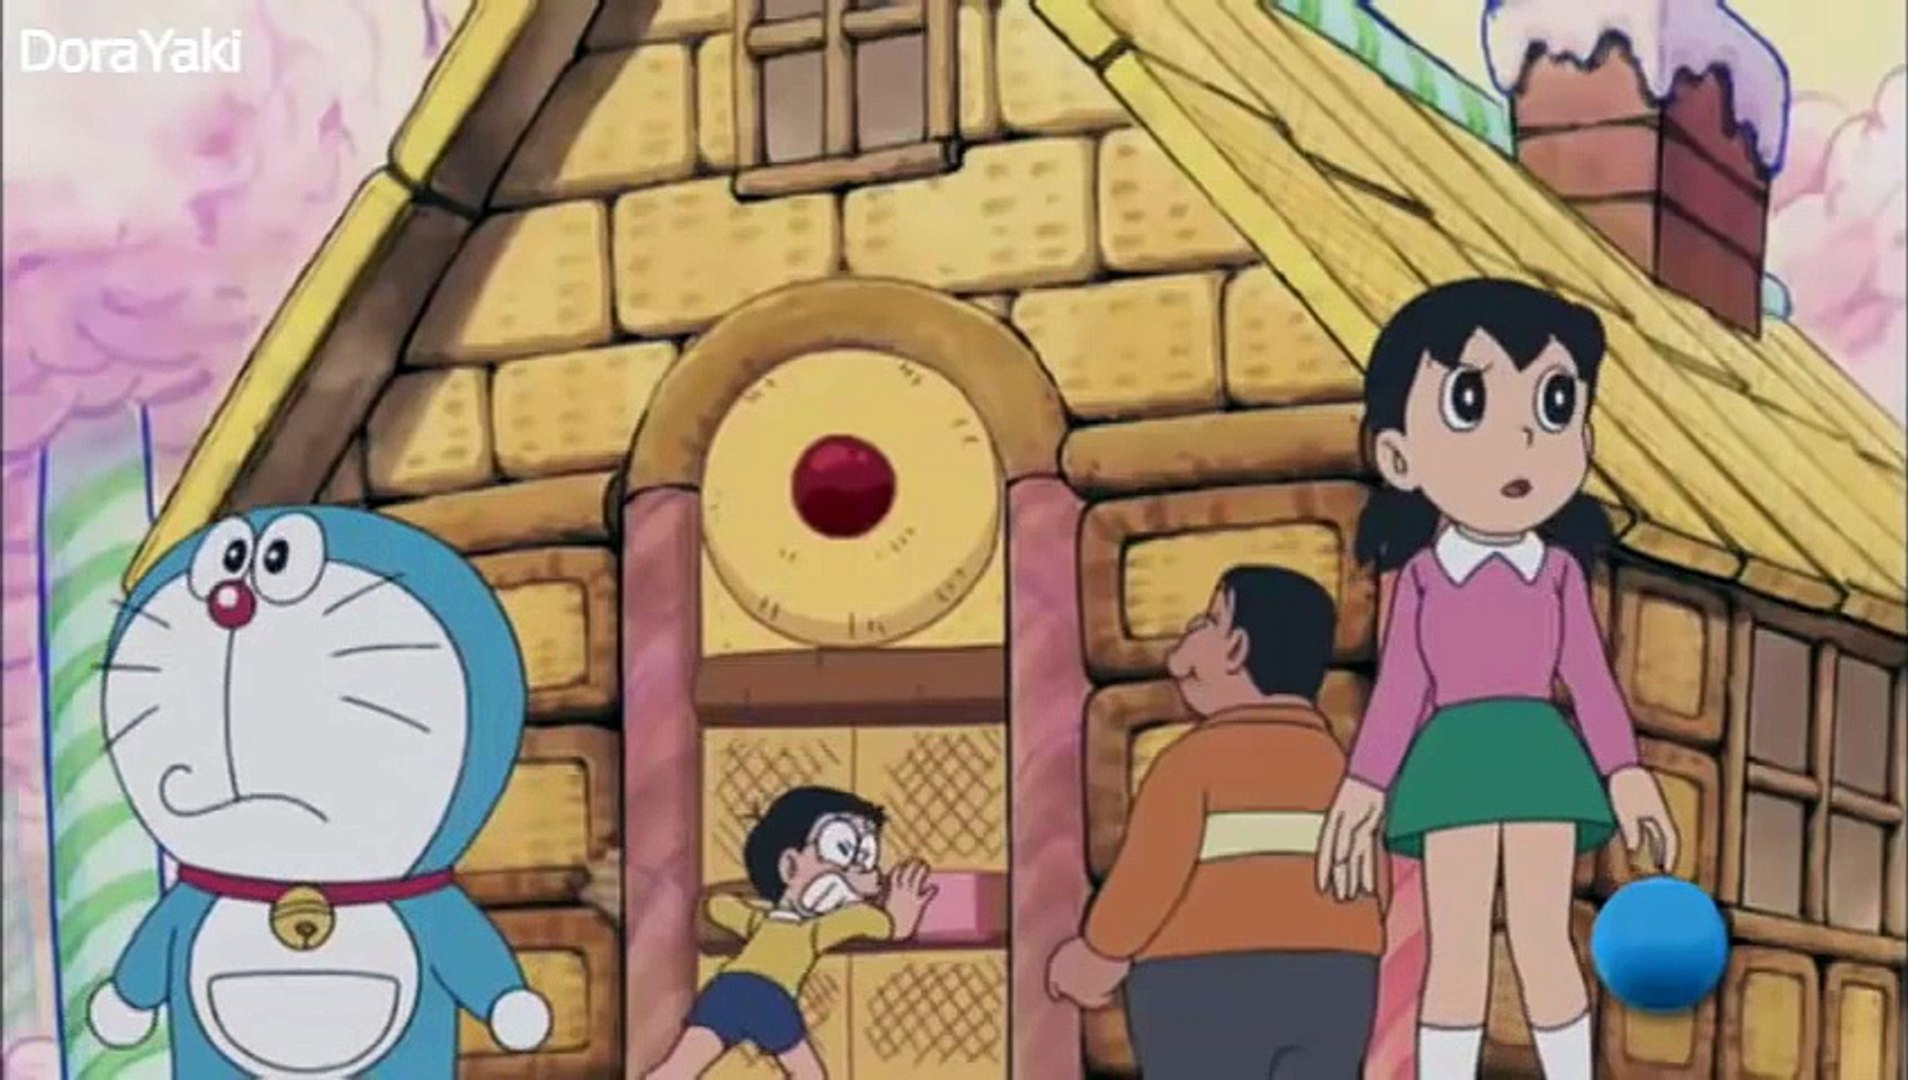 Doraemon El misterioso pais de los dulces 2015 - Dailymotion Video